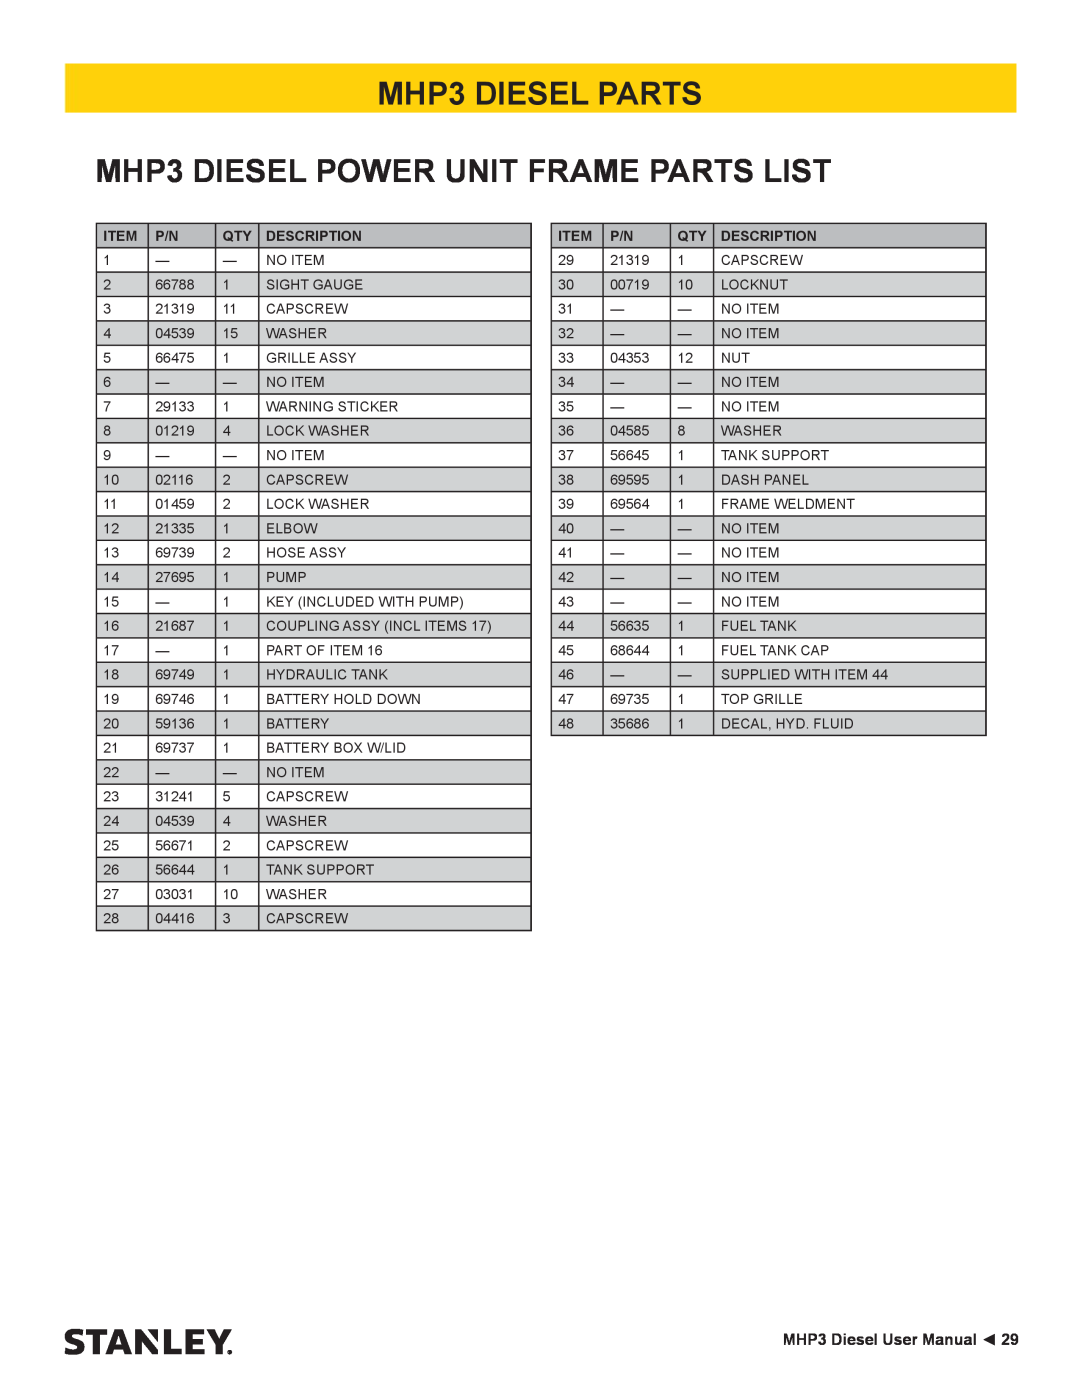 Stanley Black & Decker manual MHP3 DIESEL PARTS MHP3 DIESEL POWER UNIT FRAME PARTS LIST, MHP3 Diesel User Manual 